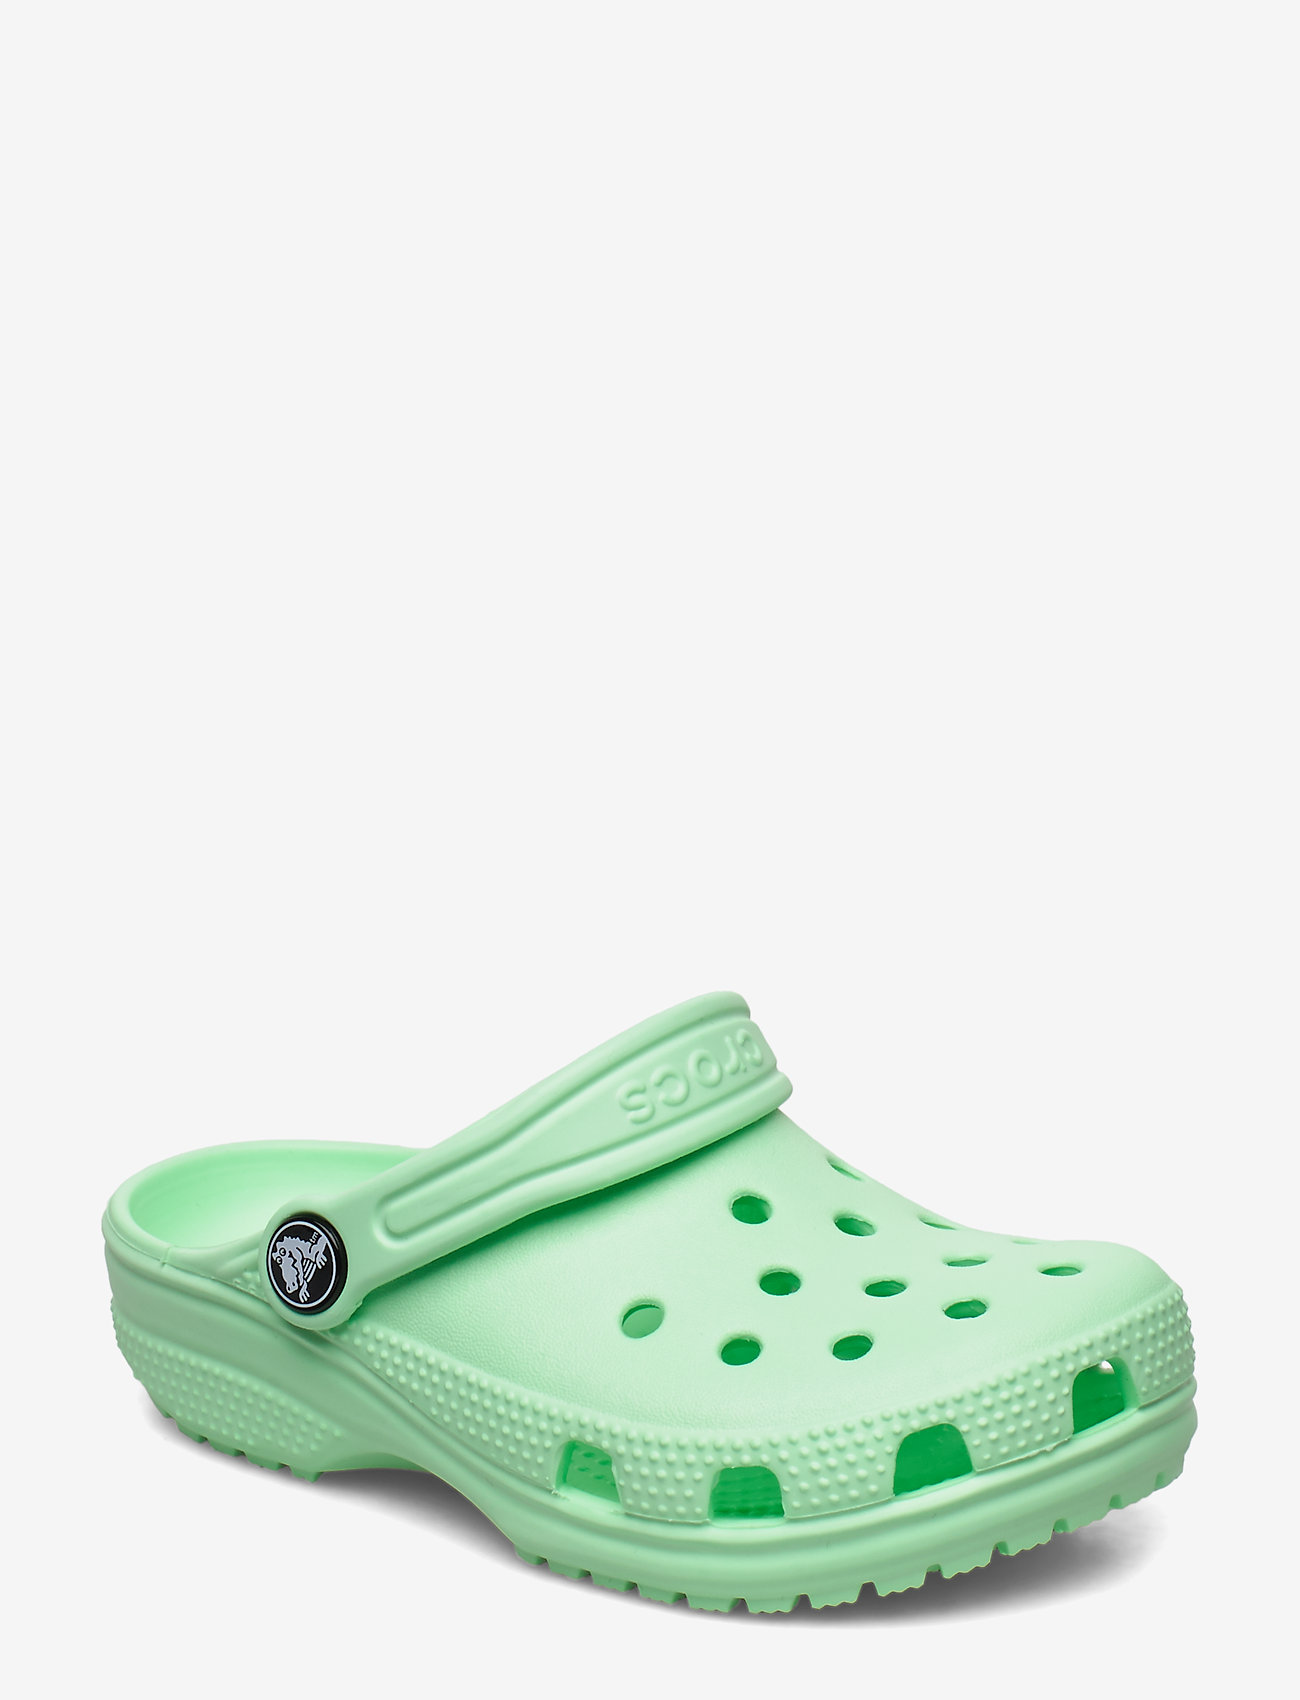 crocs classic clog